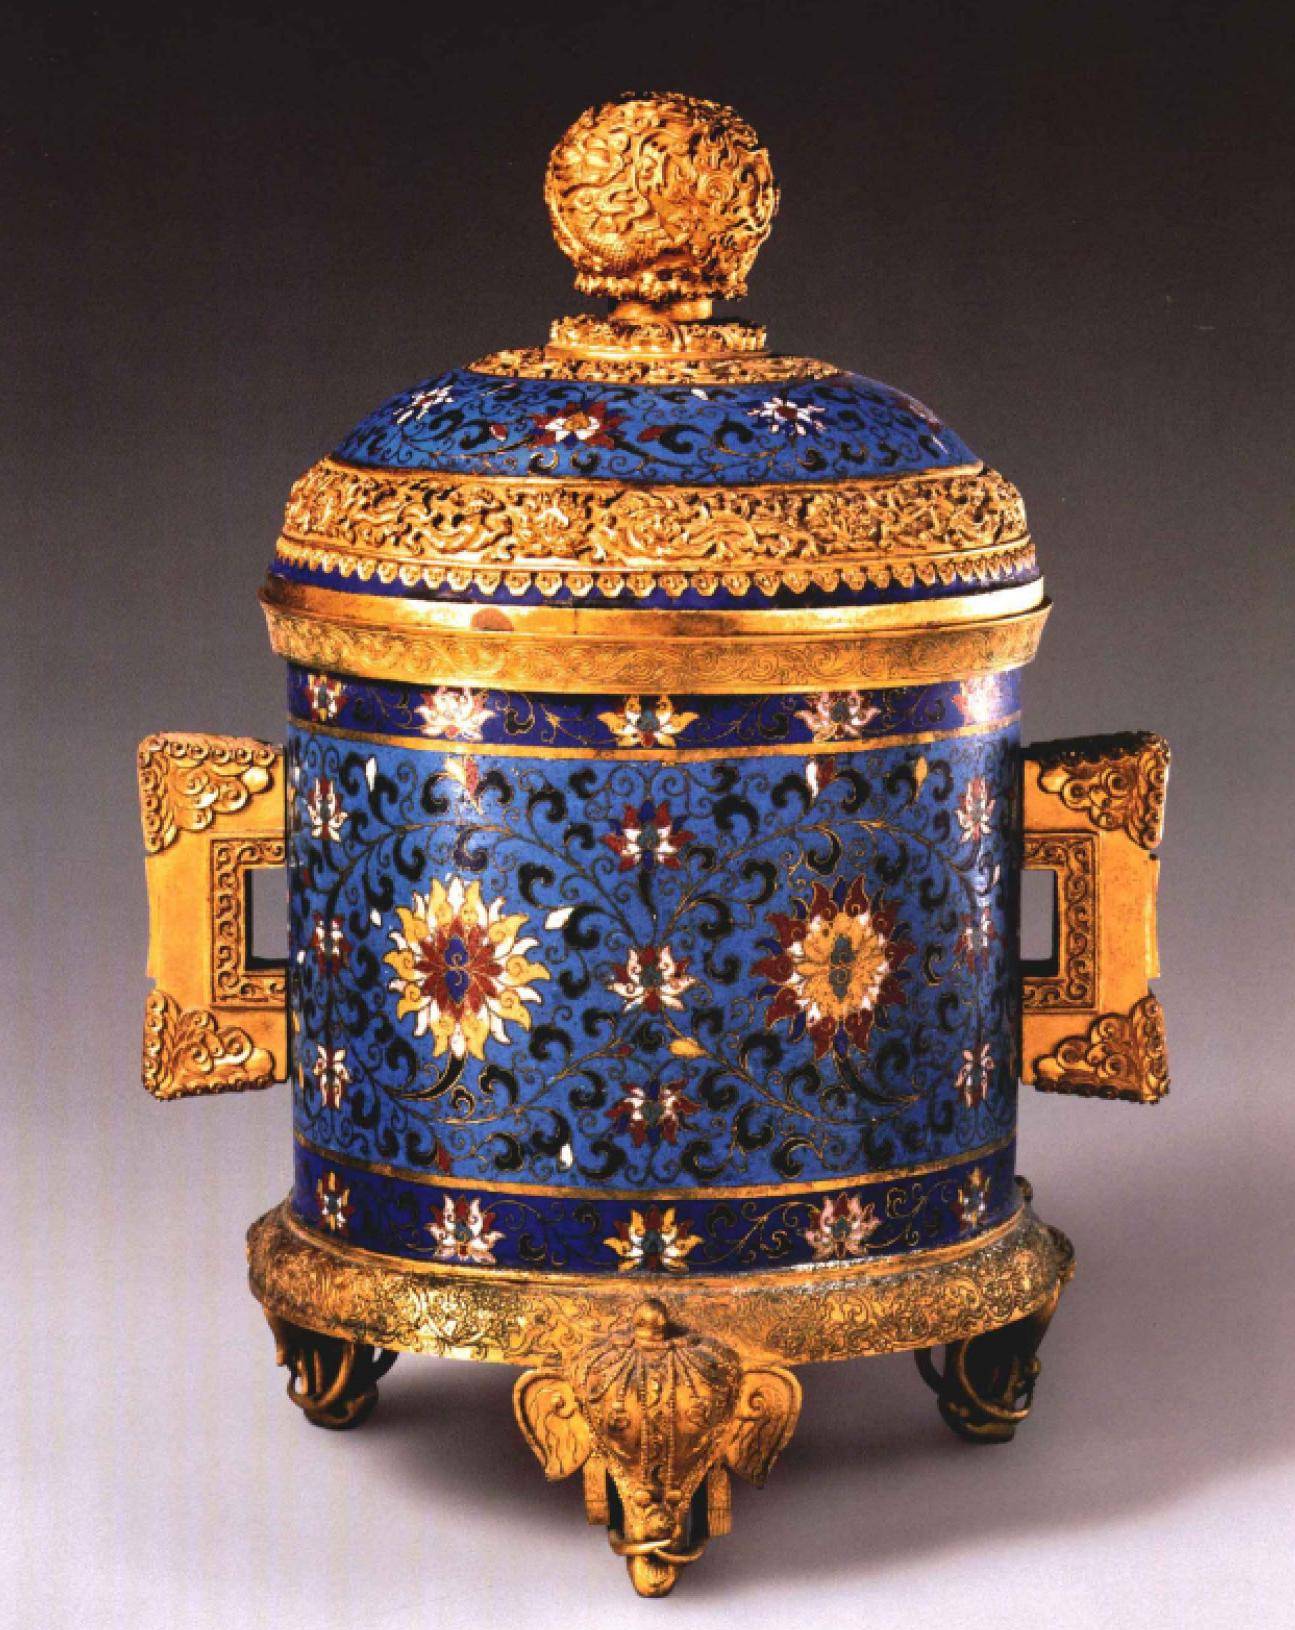 故宫博物院珍藏,设计巧妙,工艺精致,清乾隆时期掐丝珐琅器精品